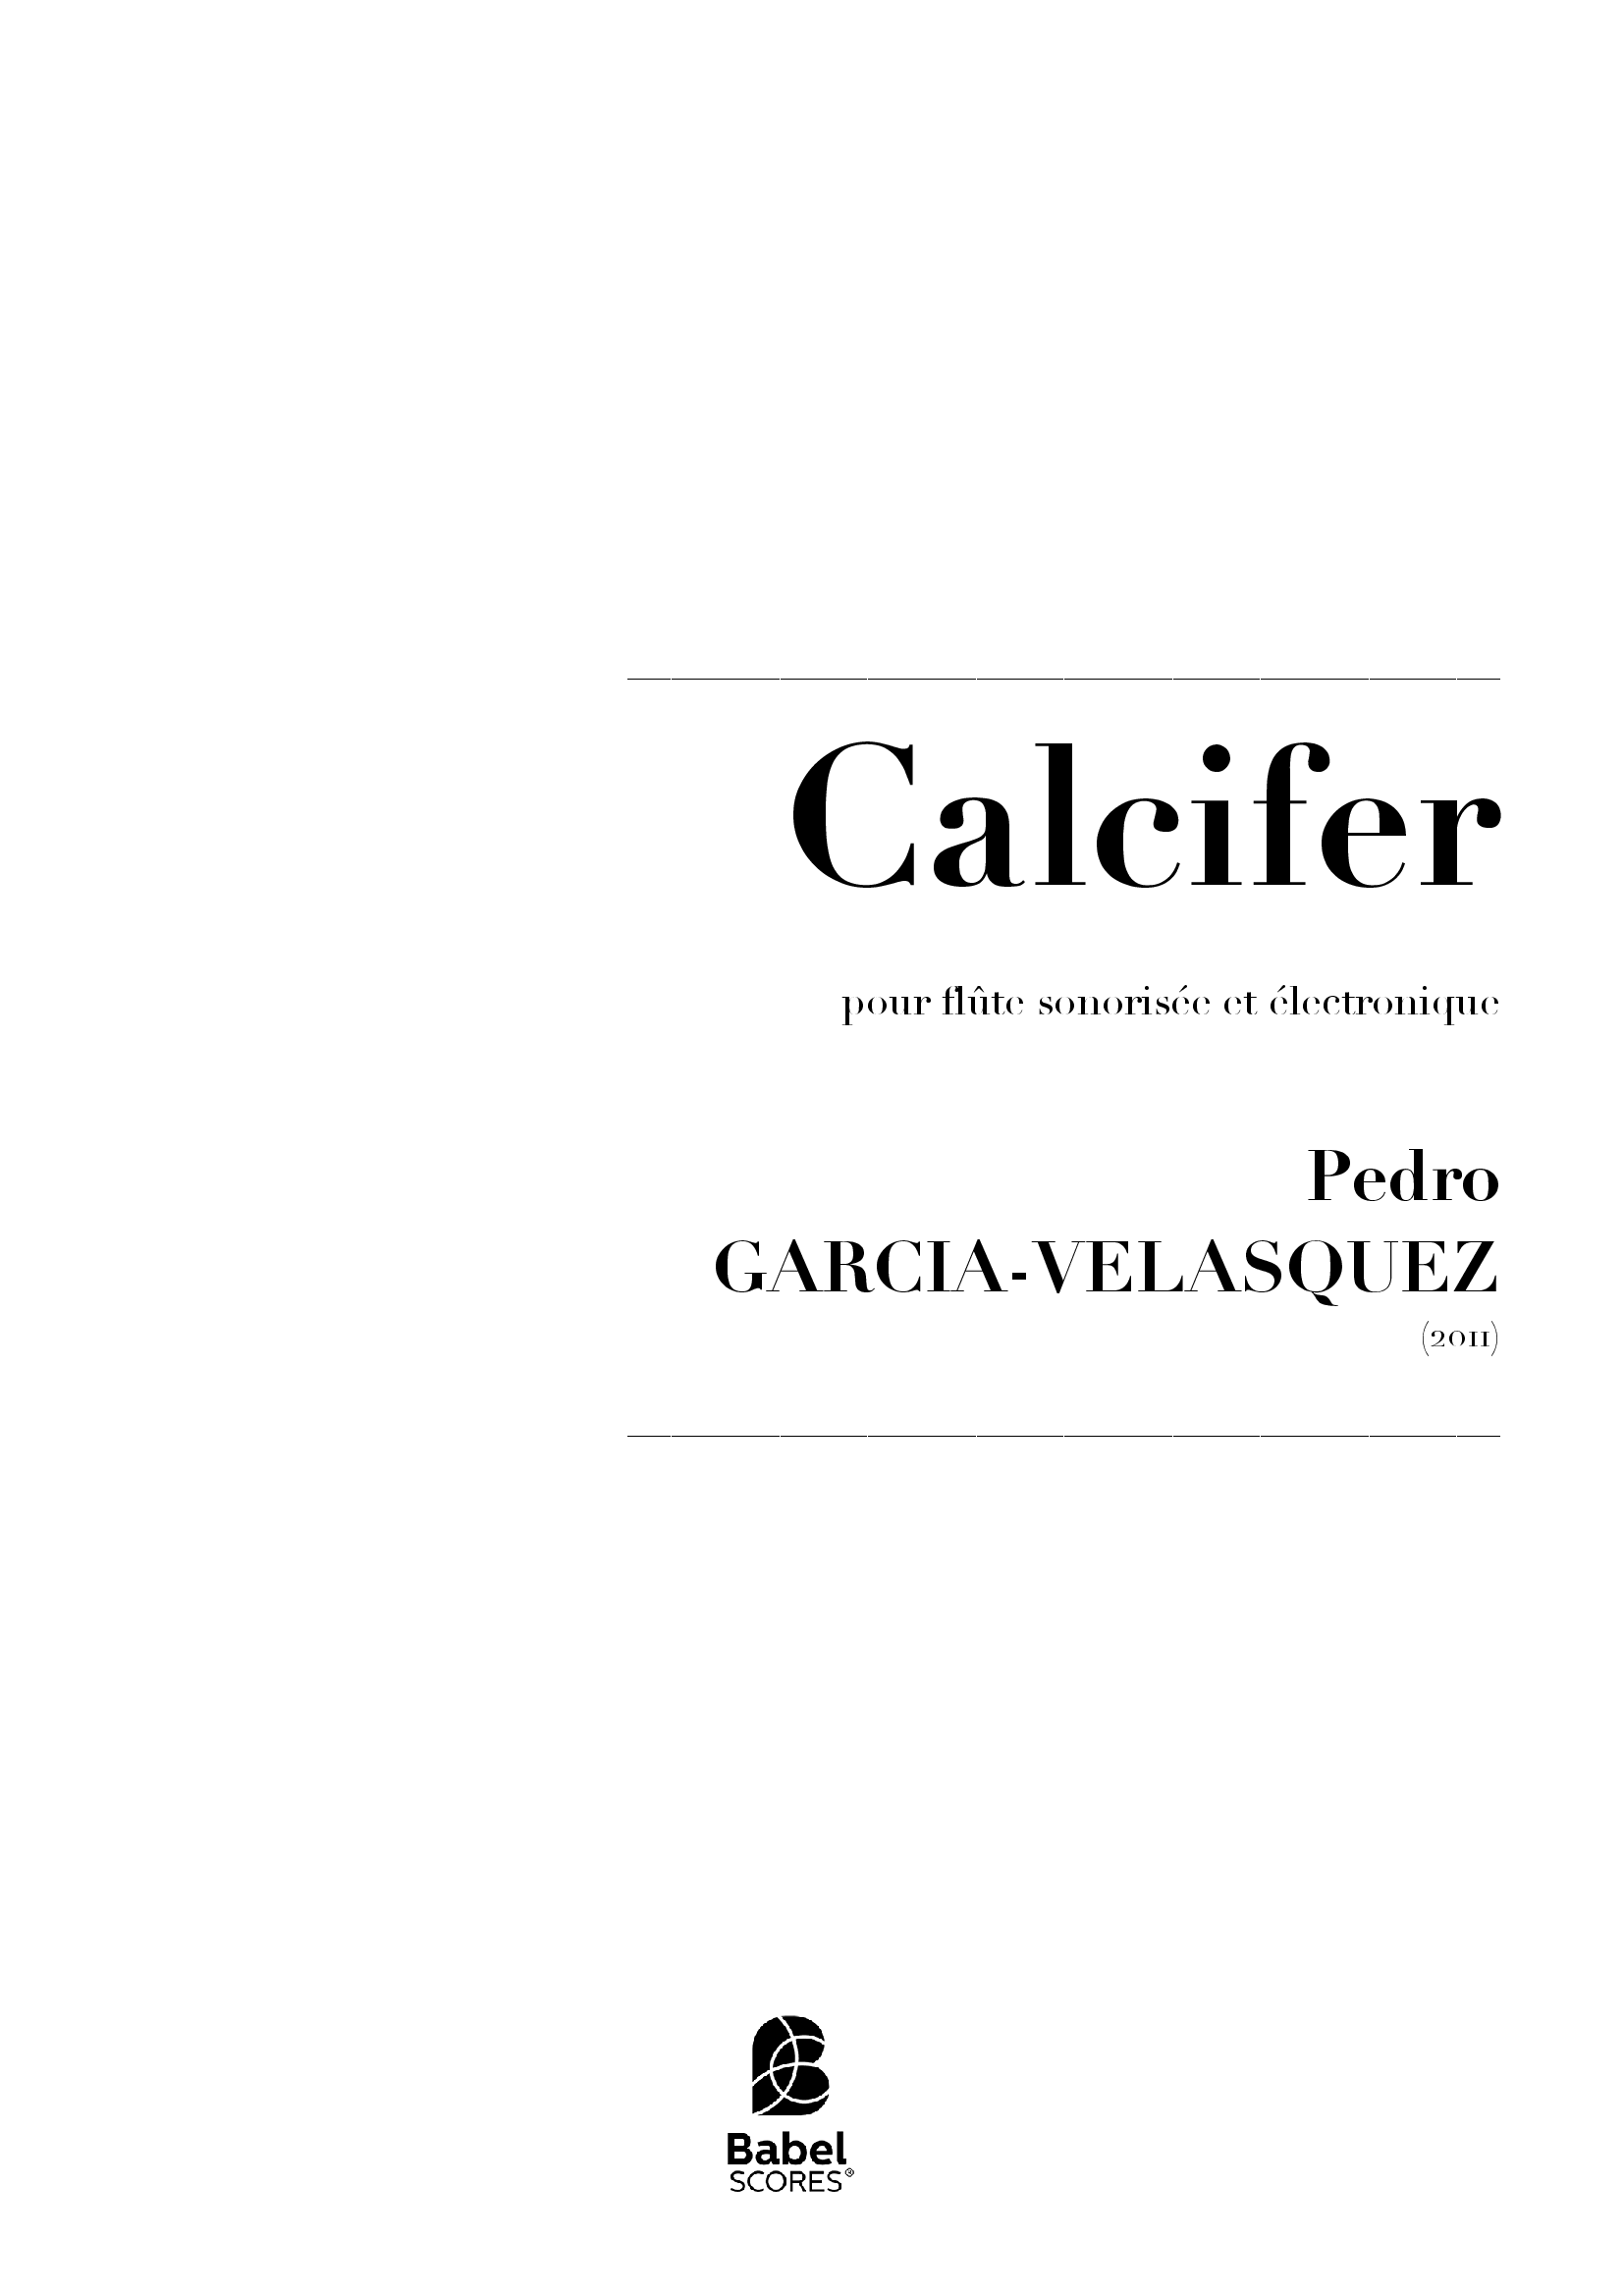 Calcifer Rev 2015 z